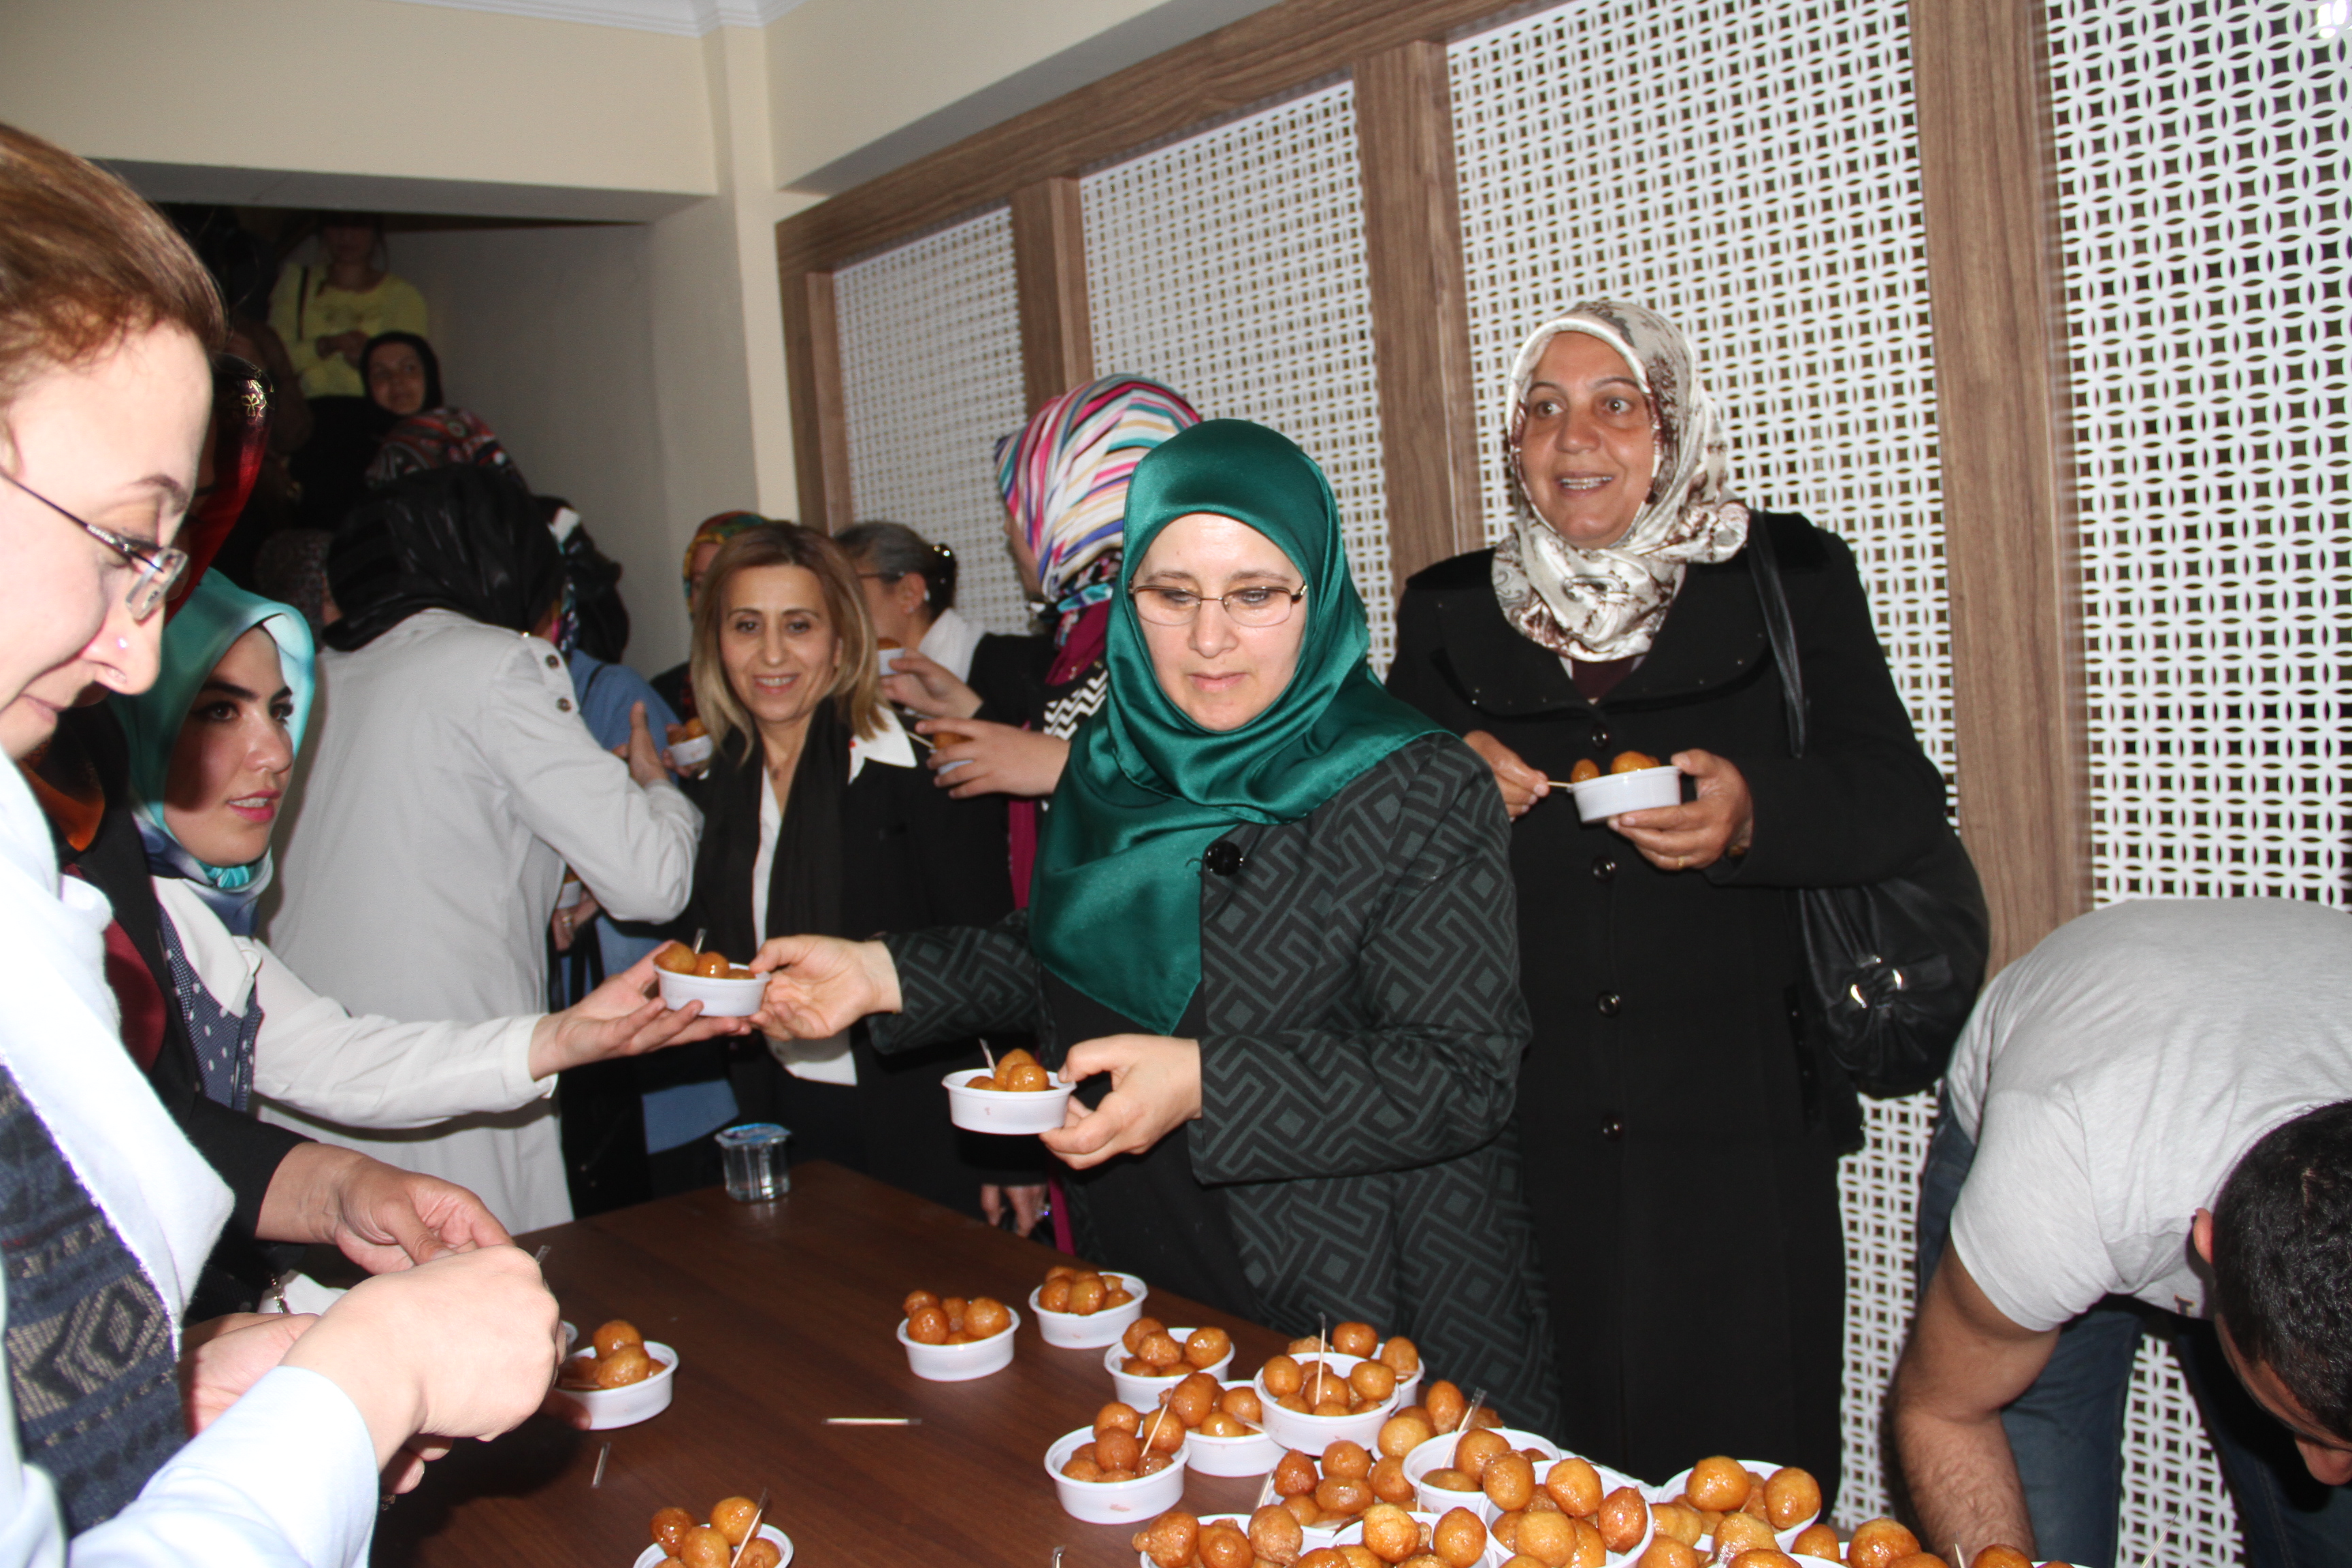 Bitlis Belediyesi öncülüğünde "Kutlum Doğum Haftası" etkinlikleri kapsamında mevlit verildi.